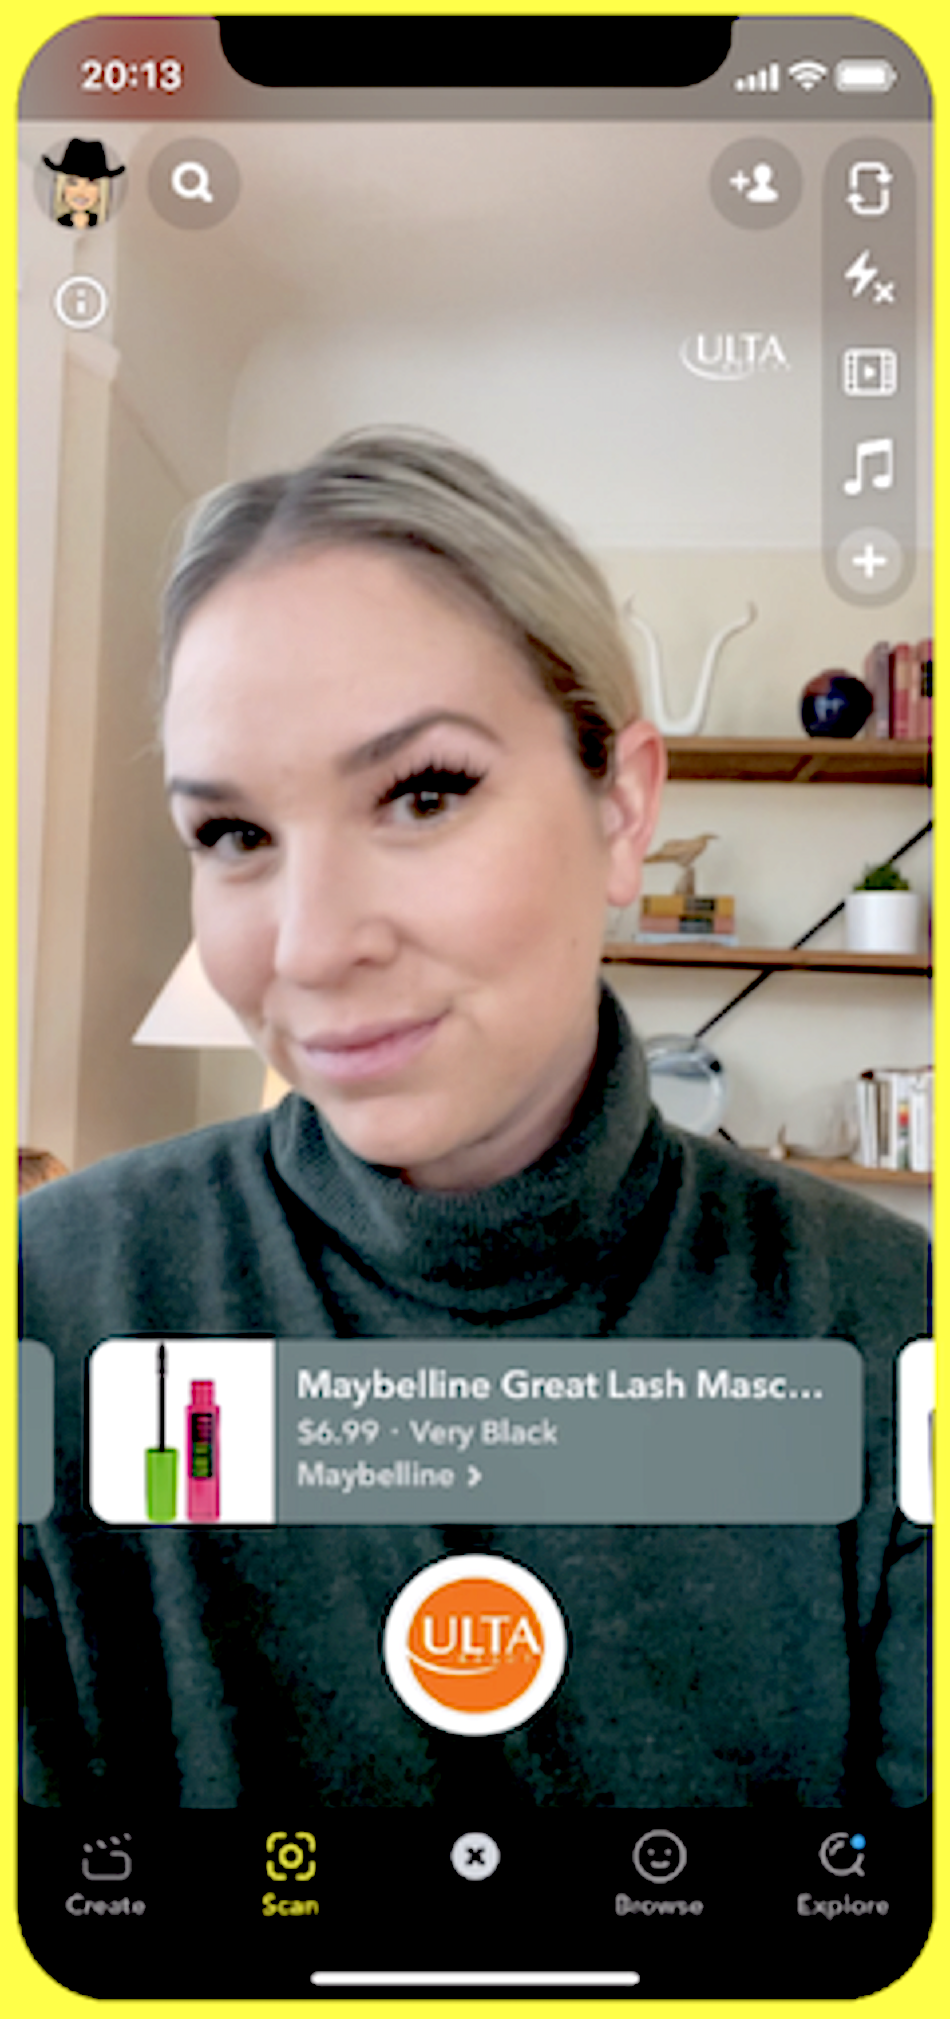 Snapchat では、ロレアルが拡張現実機能で仮想的にマスカラを試しているユーザーを表示しています。